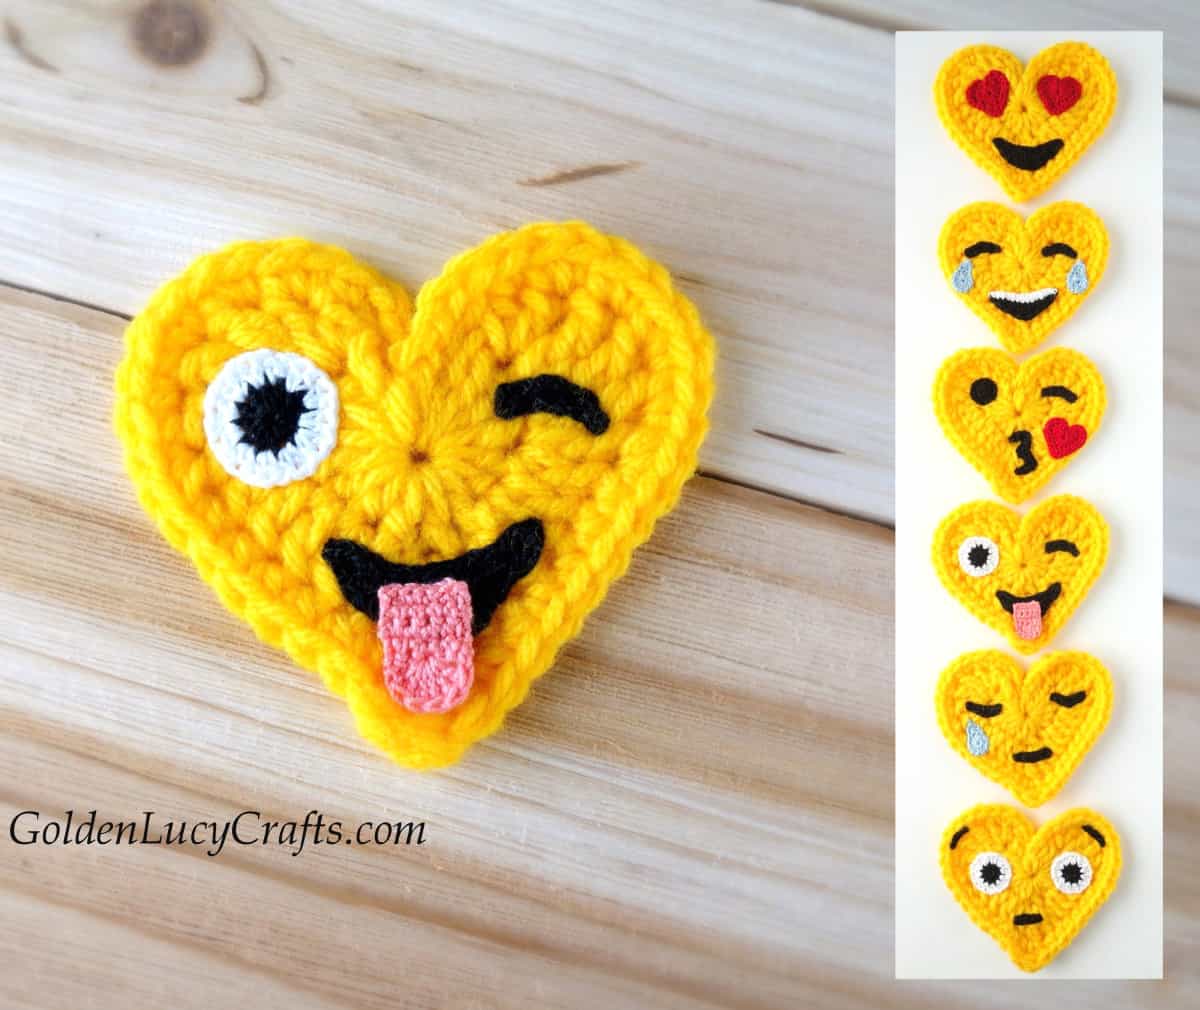 Crochet heart-shaped emojis.